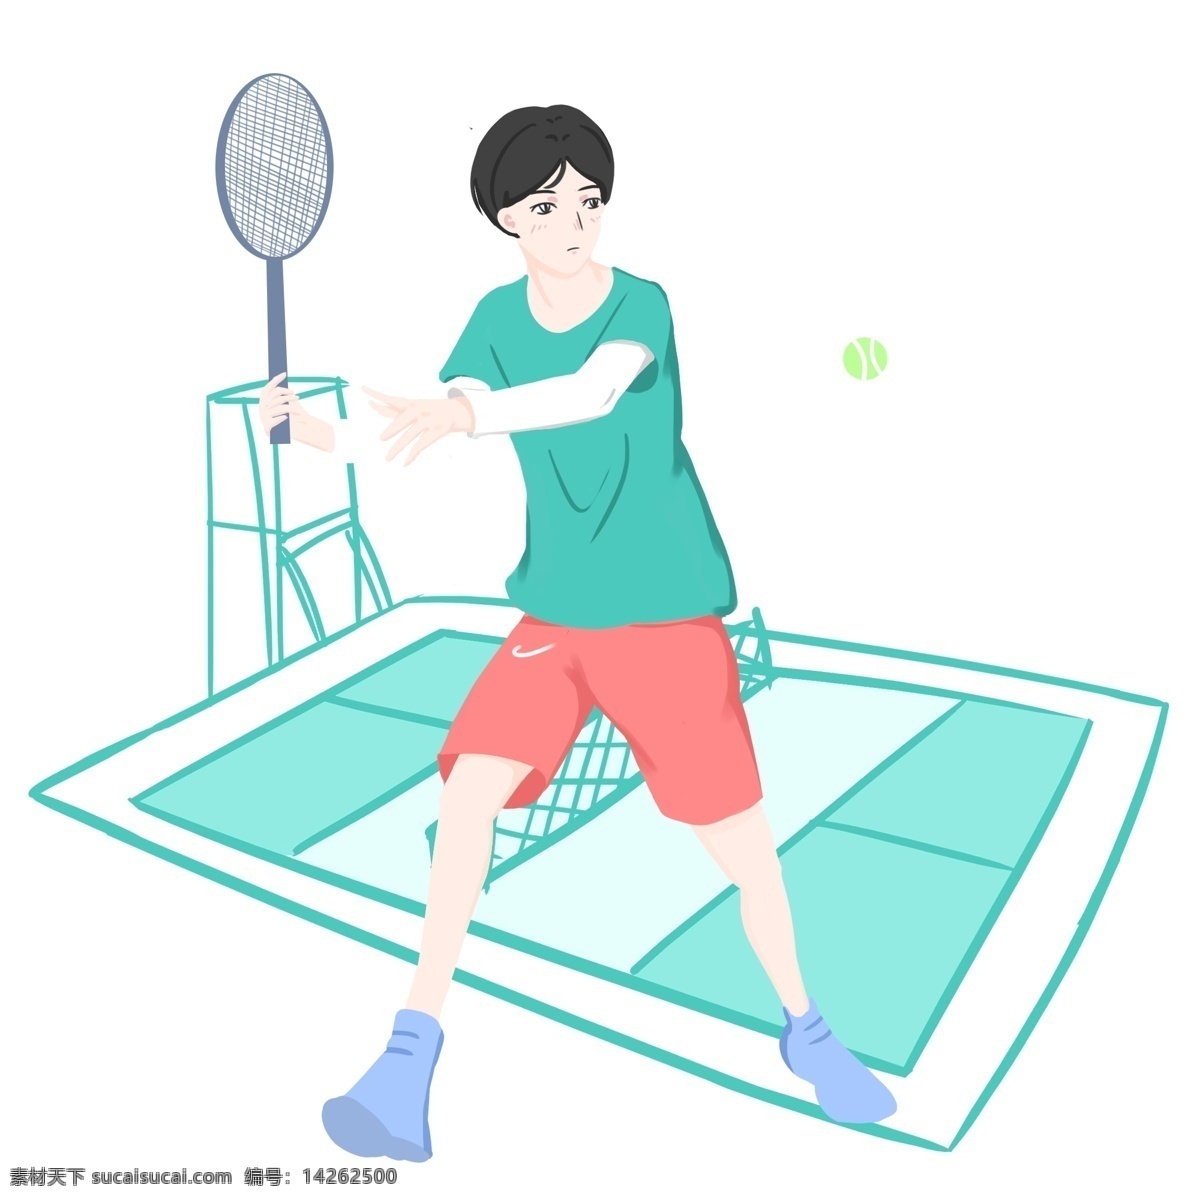 羽毛球 小 男孩 插画 运动健身插画 羽毛球健身 打球的小男孩 健身的小男孩 卡通人物 室外健身